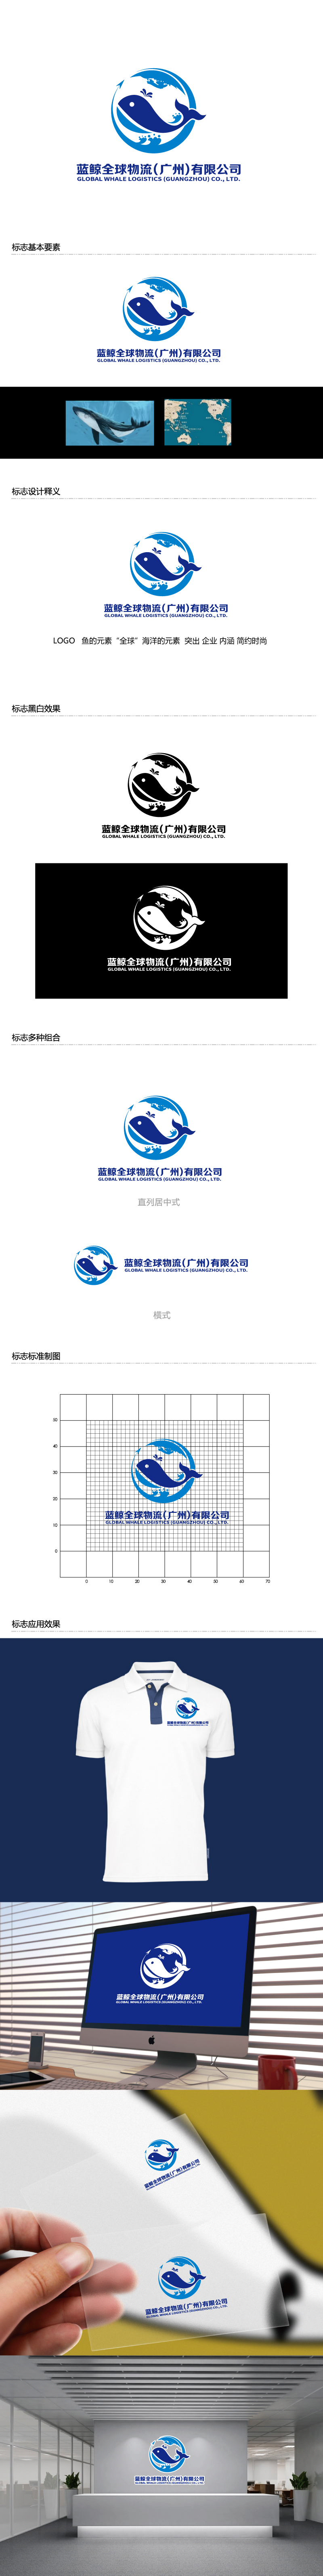 张俊的蓝鲸全球物流（广州）有限公司logo设计